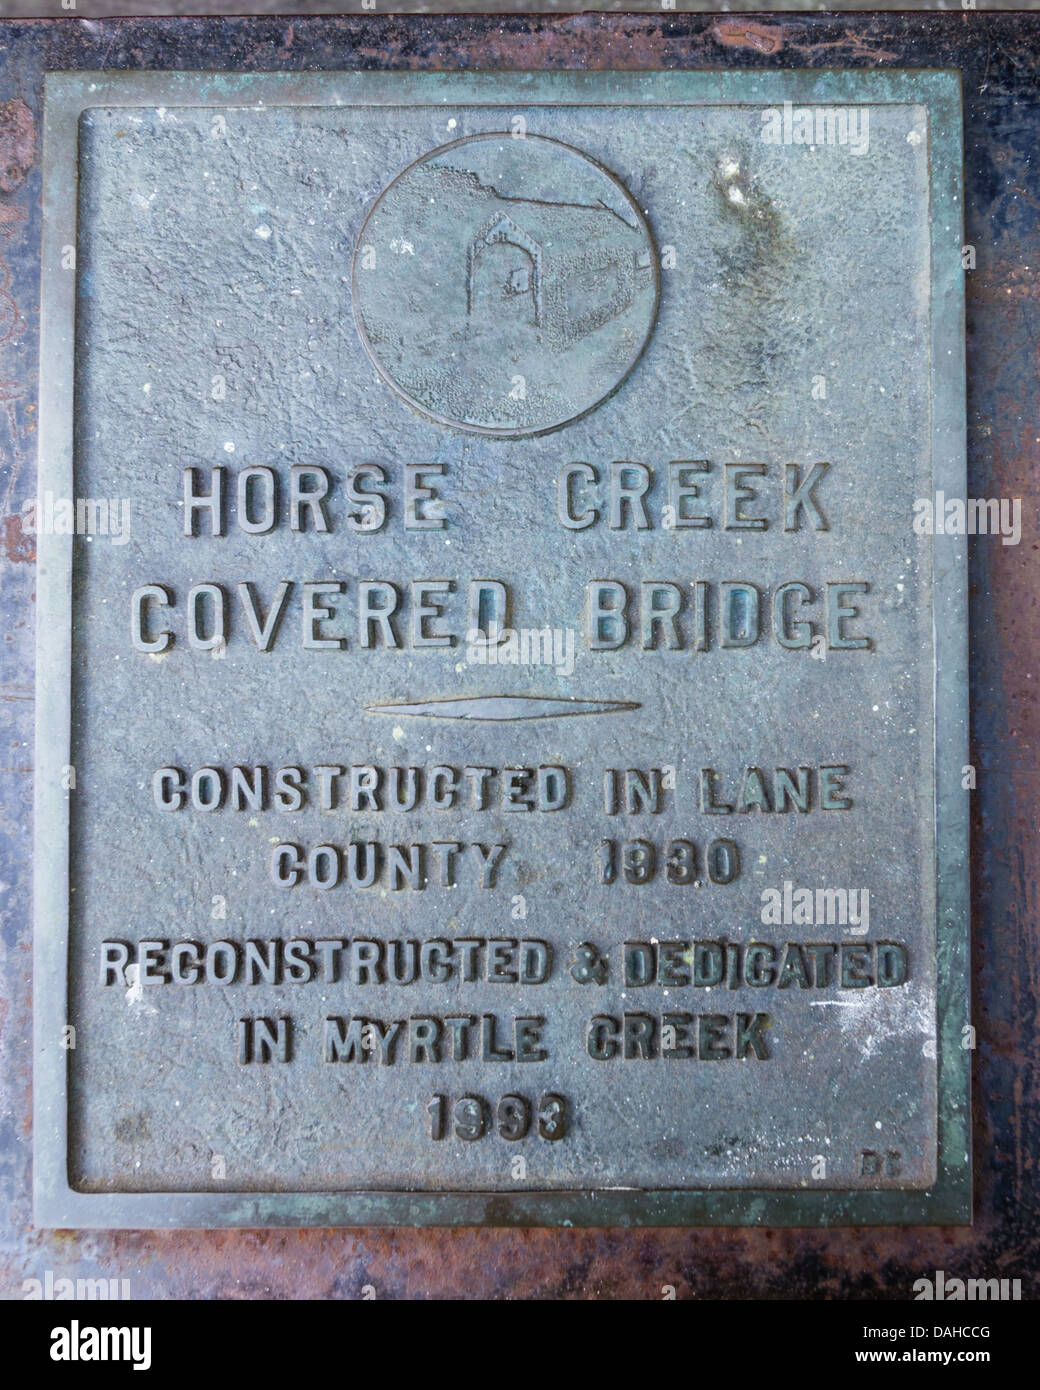 Myrtle Creek, Oregon, United States. Marquage de la plaque Horse Creek qui traverse le pont couvert de Myrtle Creek dans le comté de Douglas Oregon Banque D'Images